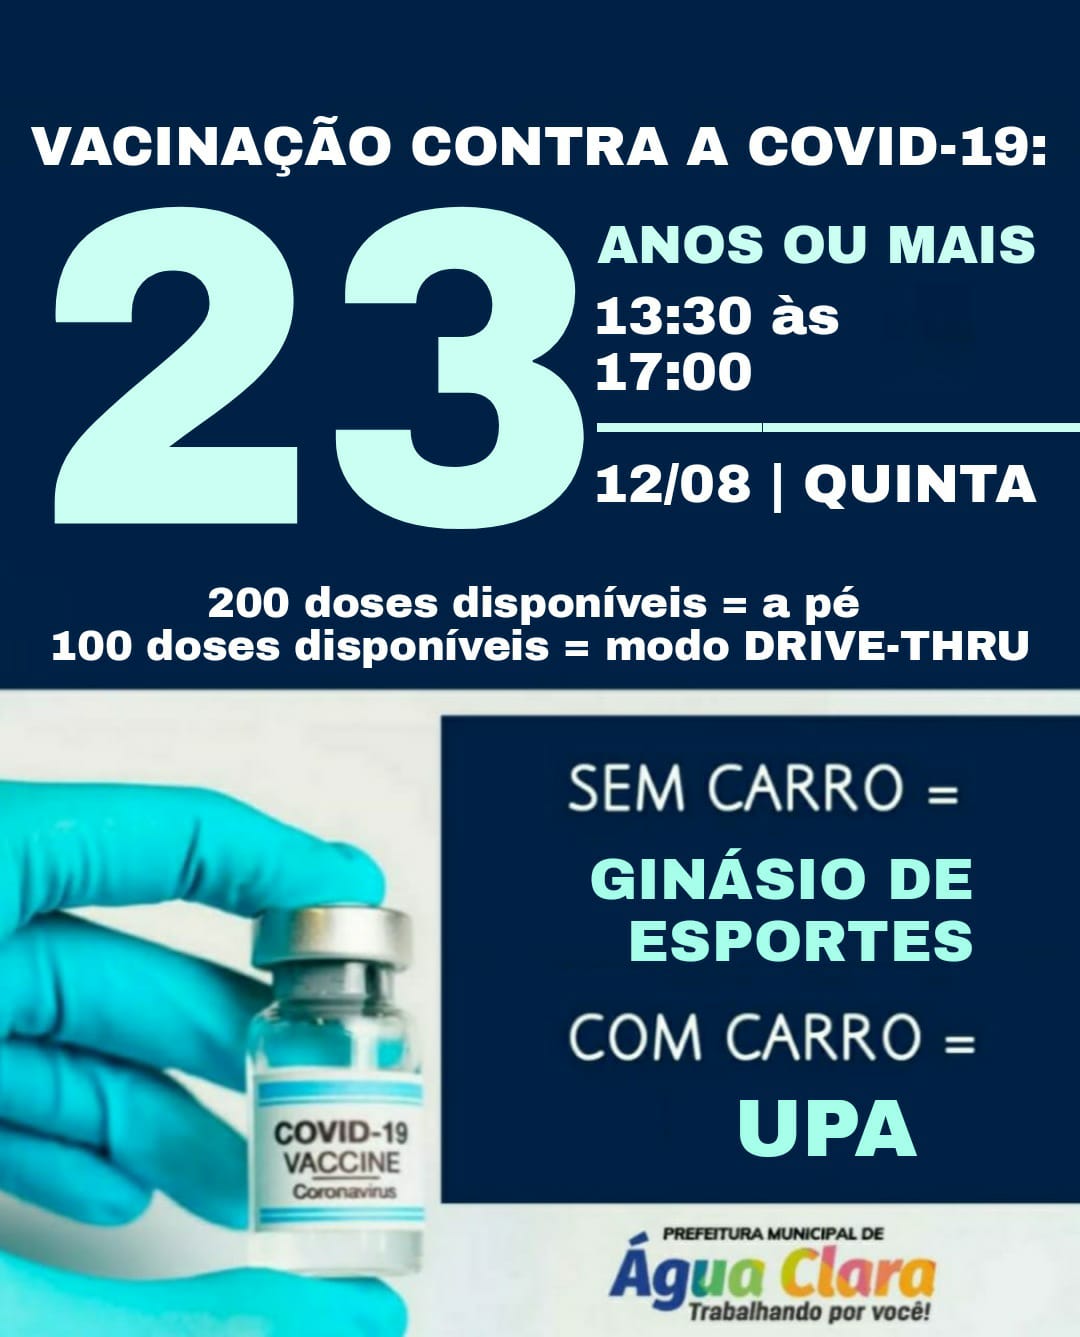 VACINAÇÃO CONTRA COVID-19 AVANÇA EM ÁGUA CLARA